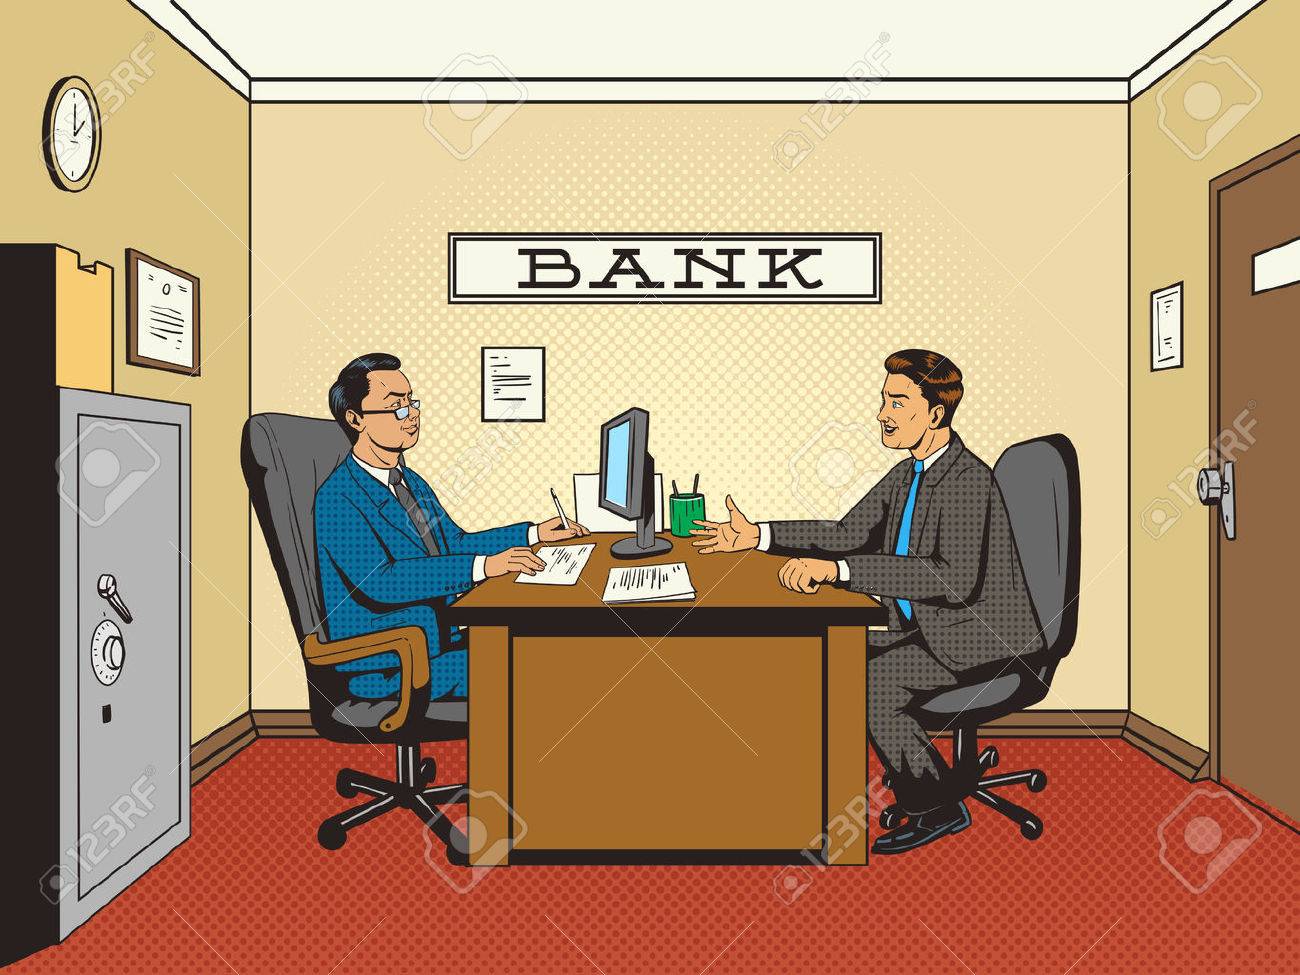 banker clipart bank officer